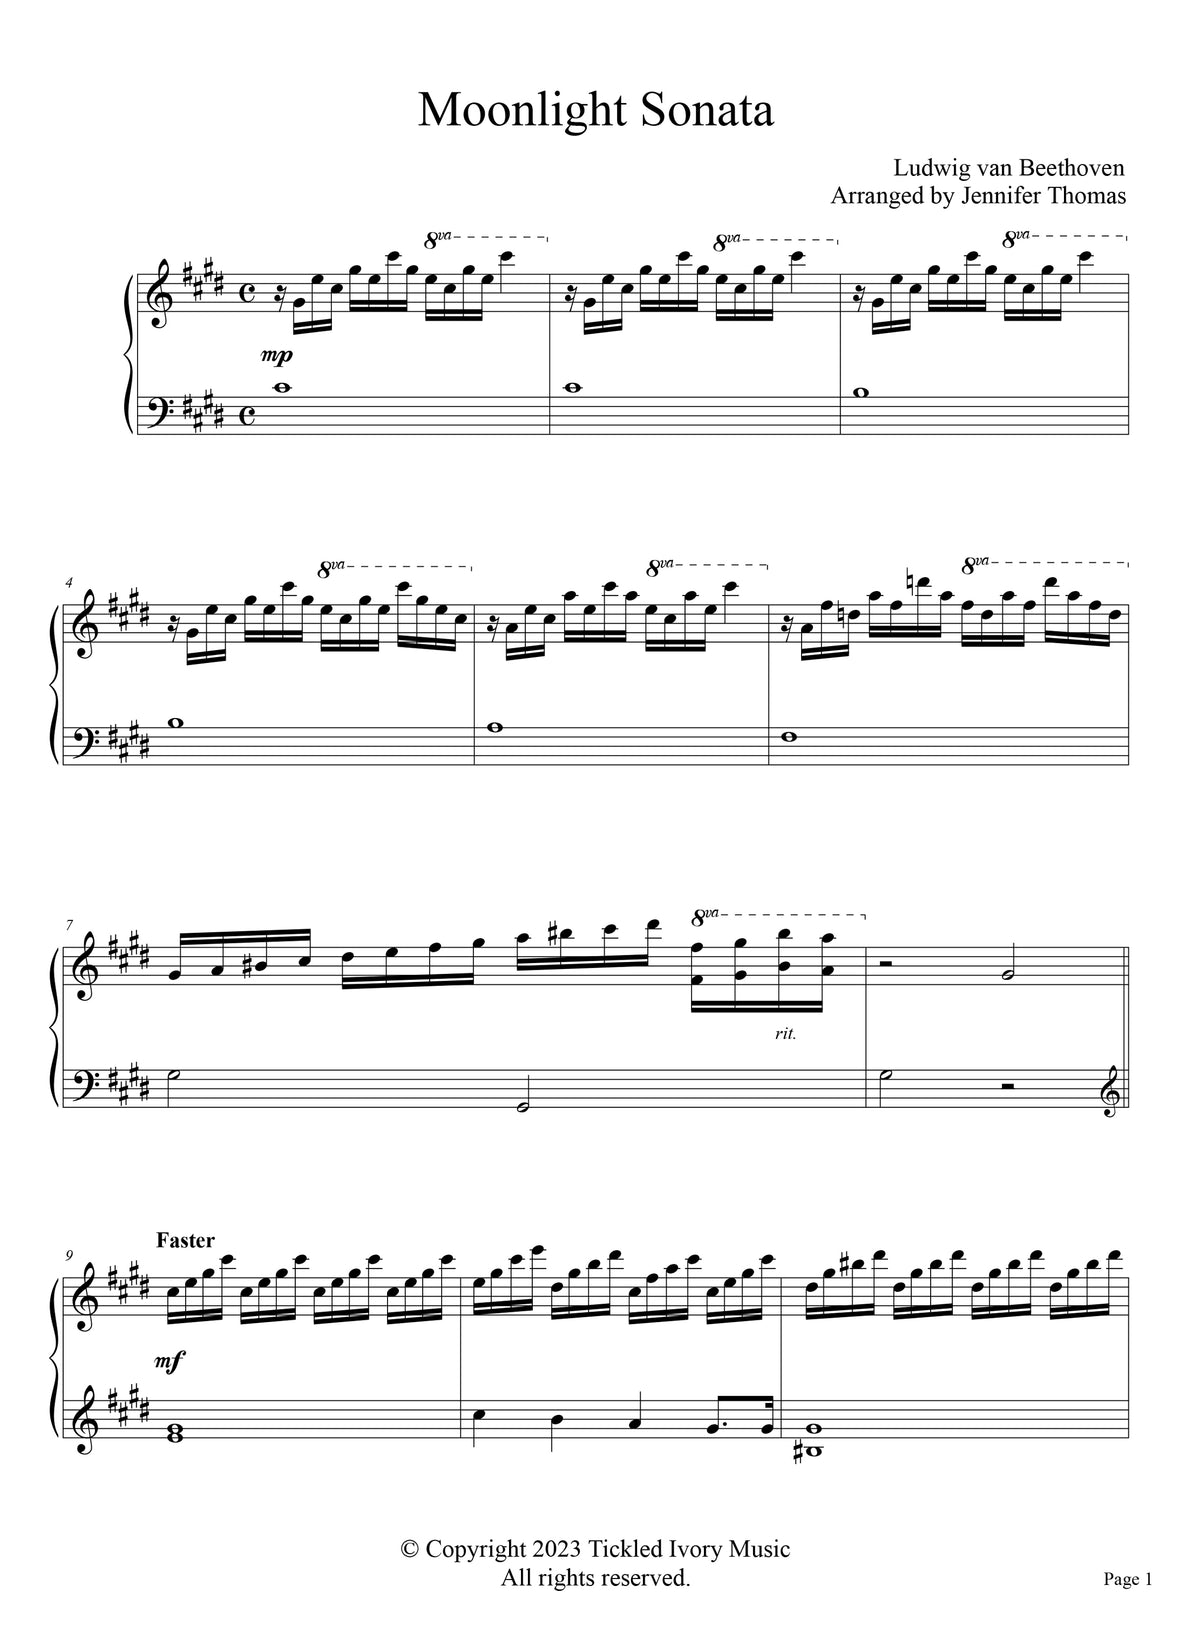 Clásico reinventado, vol. 1 Cancionero digital para piano solo PRE-ORDEN